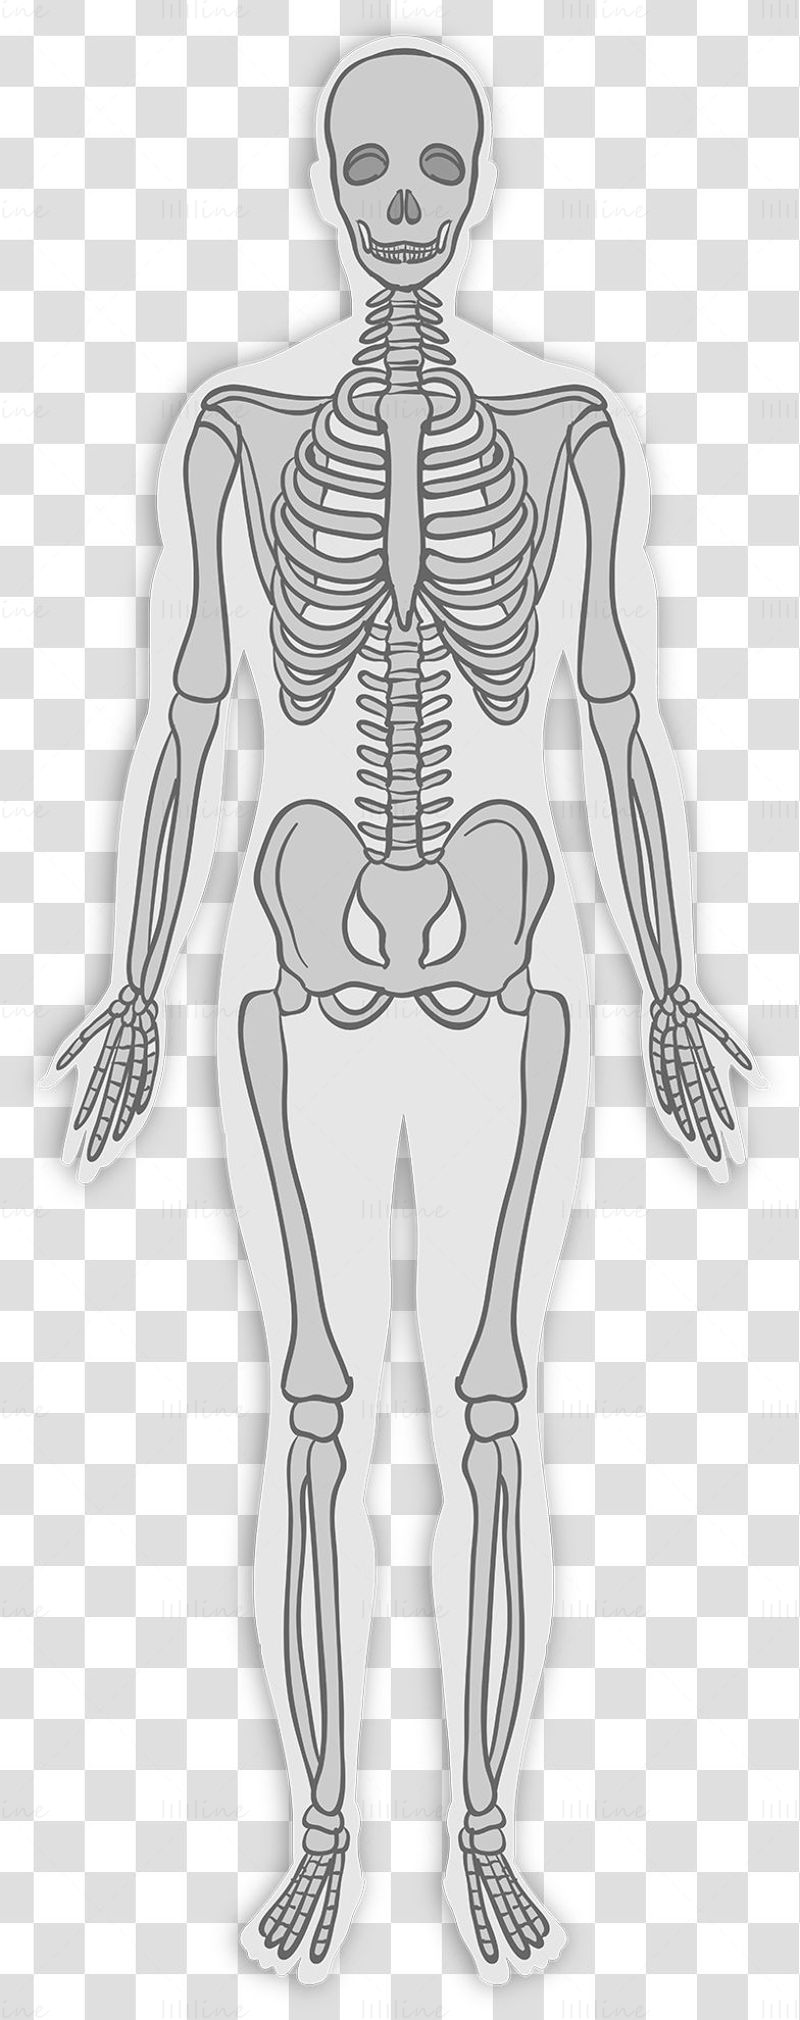 Adult skeletal system vector illustration